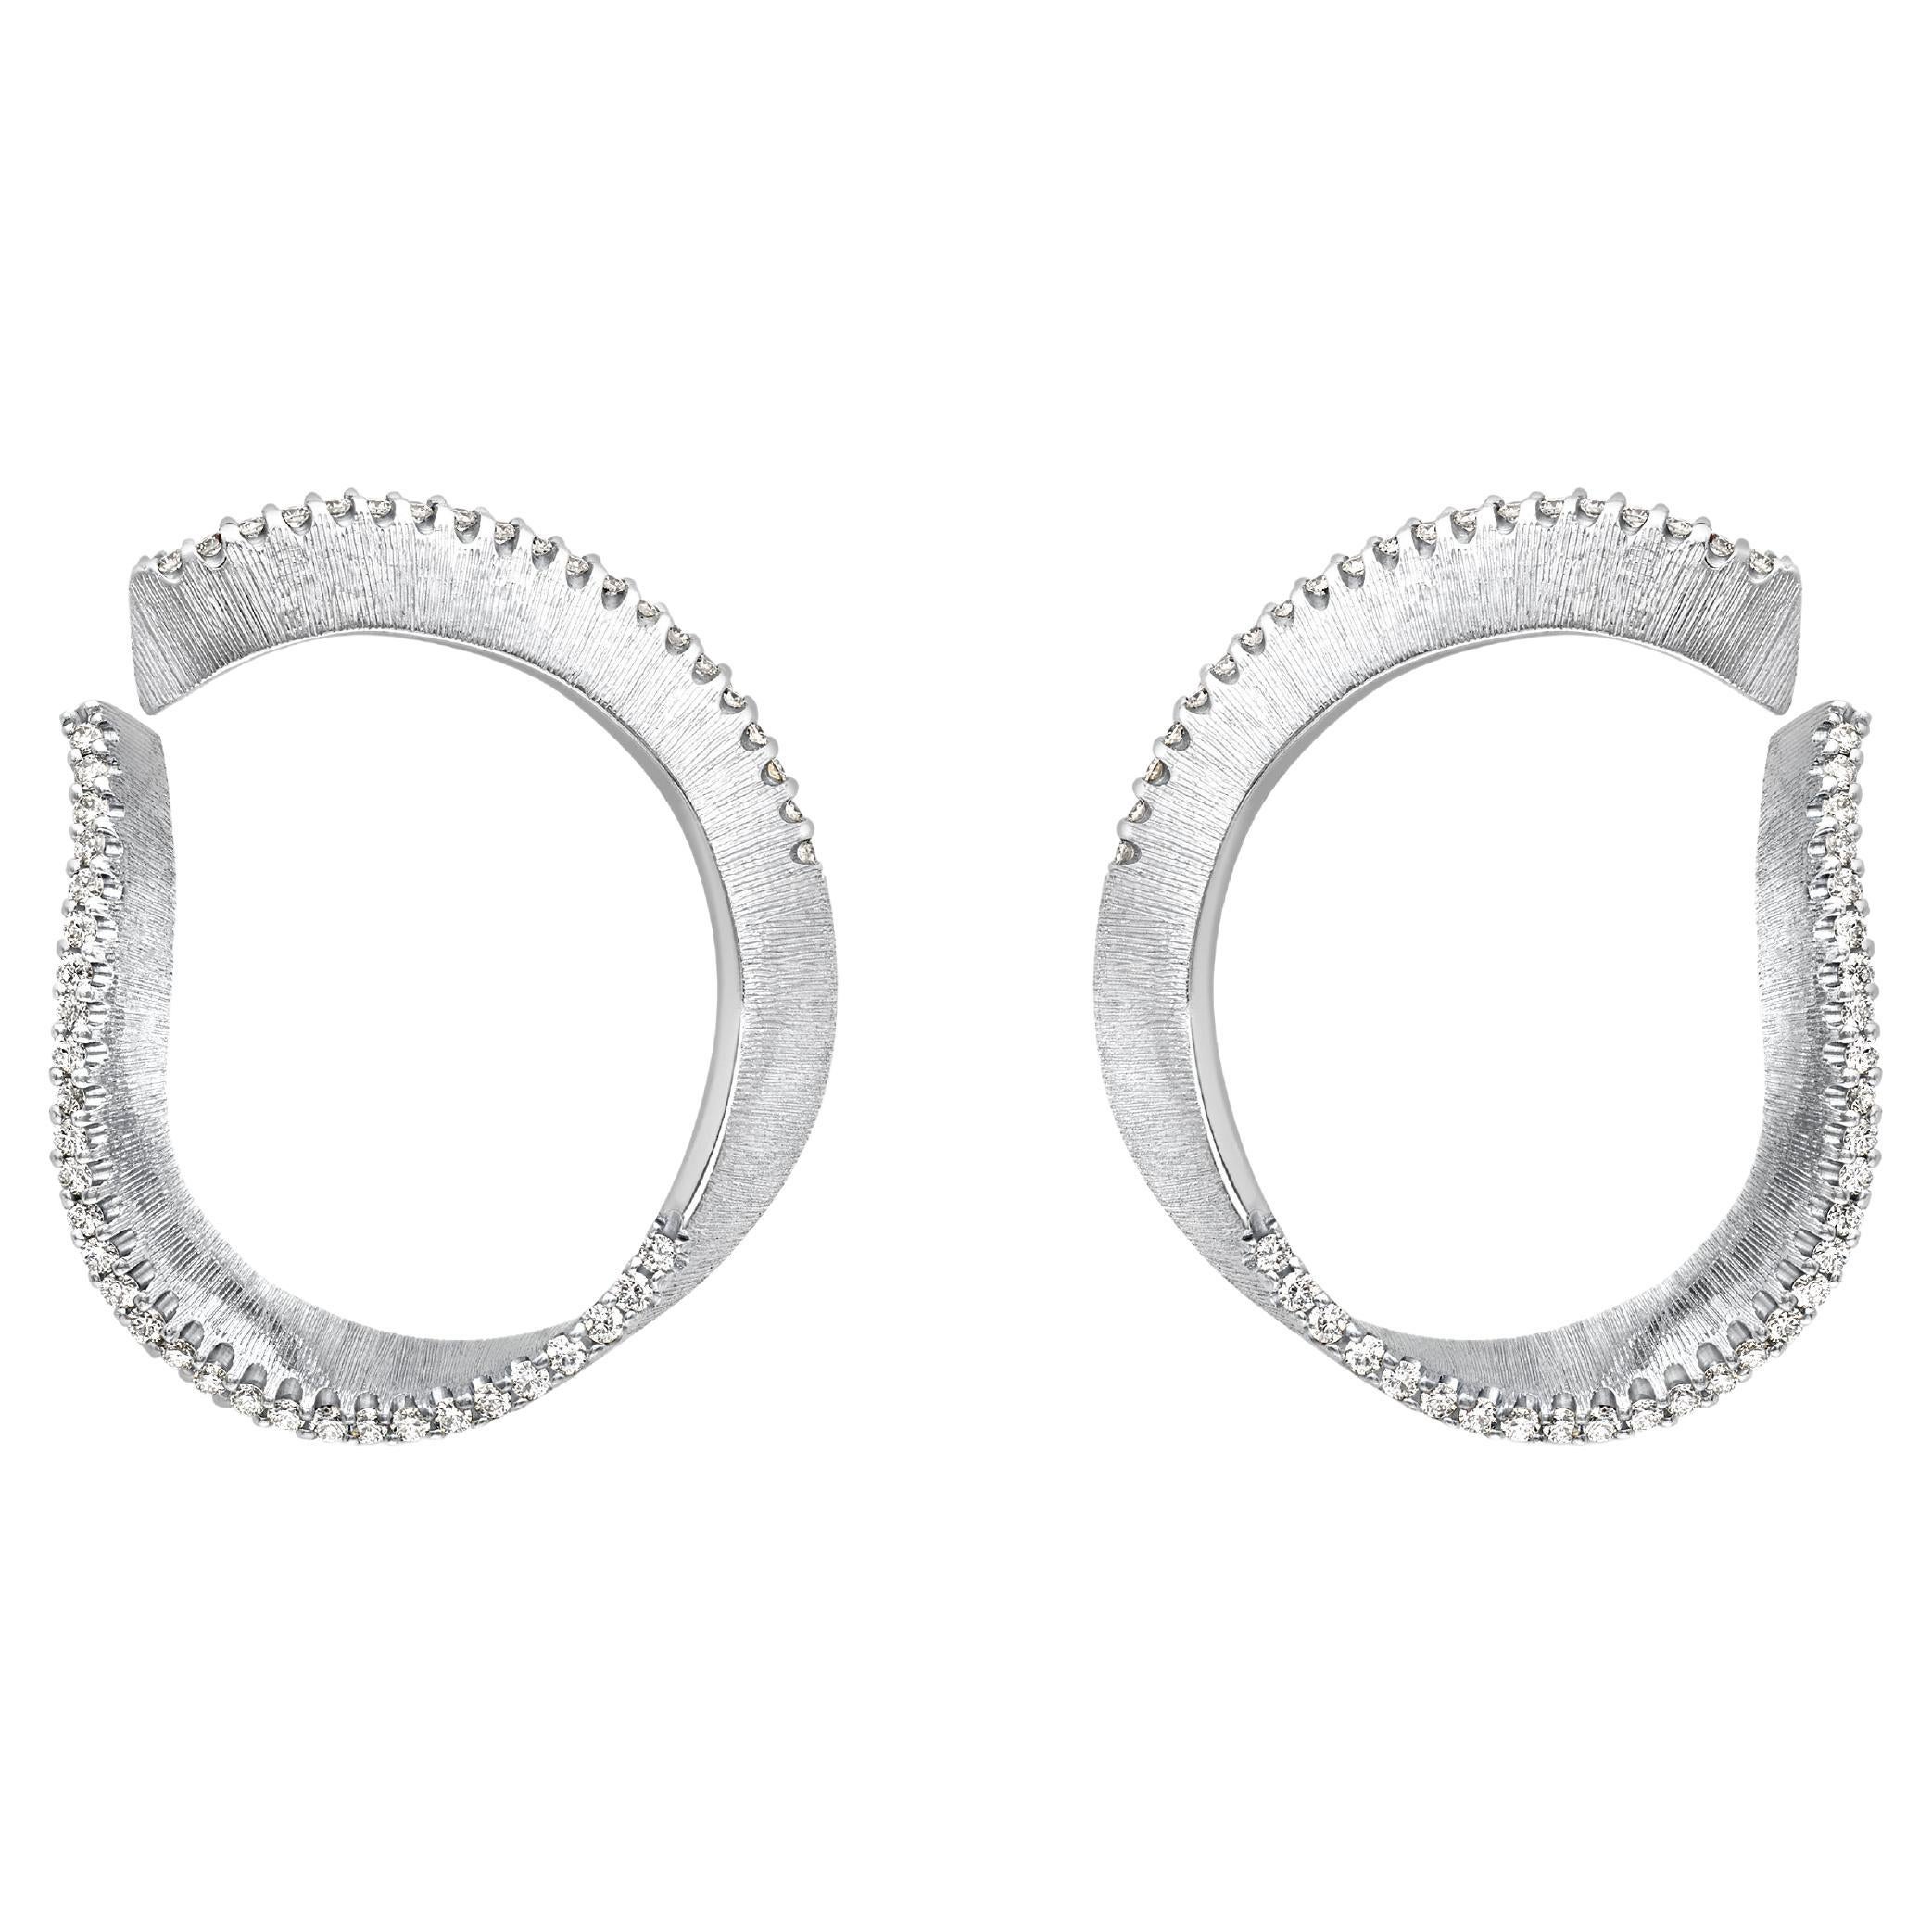 Diamond Edge Twist Hoop Earrings, 18 Karat White Gold, by Liv Luttrell